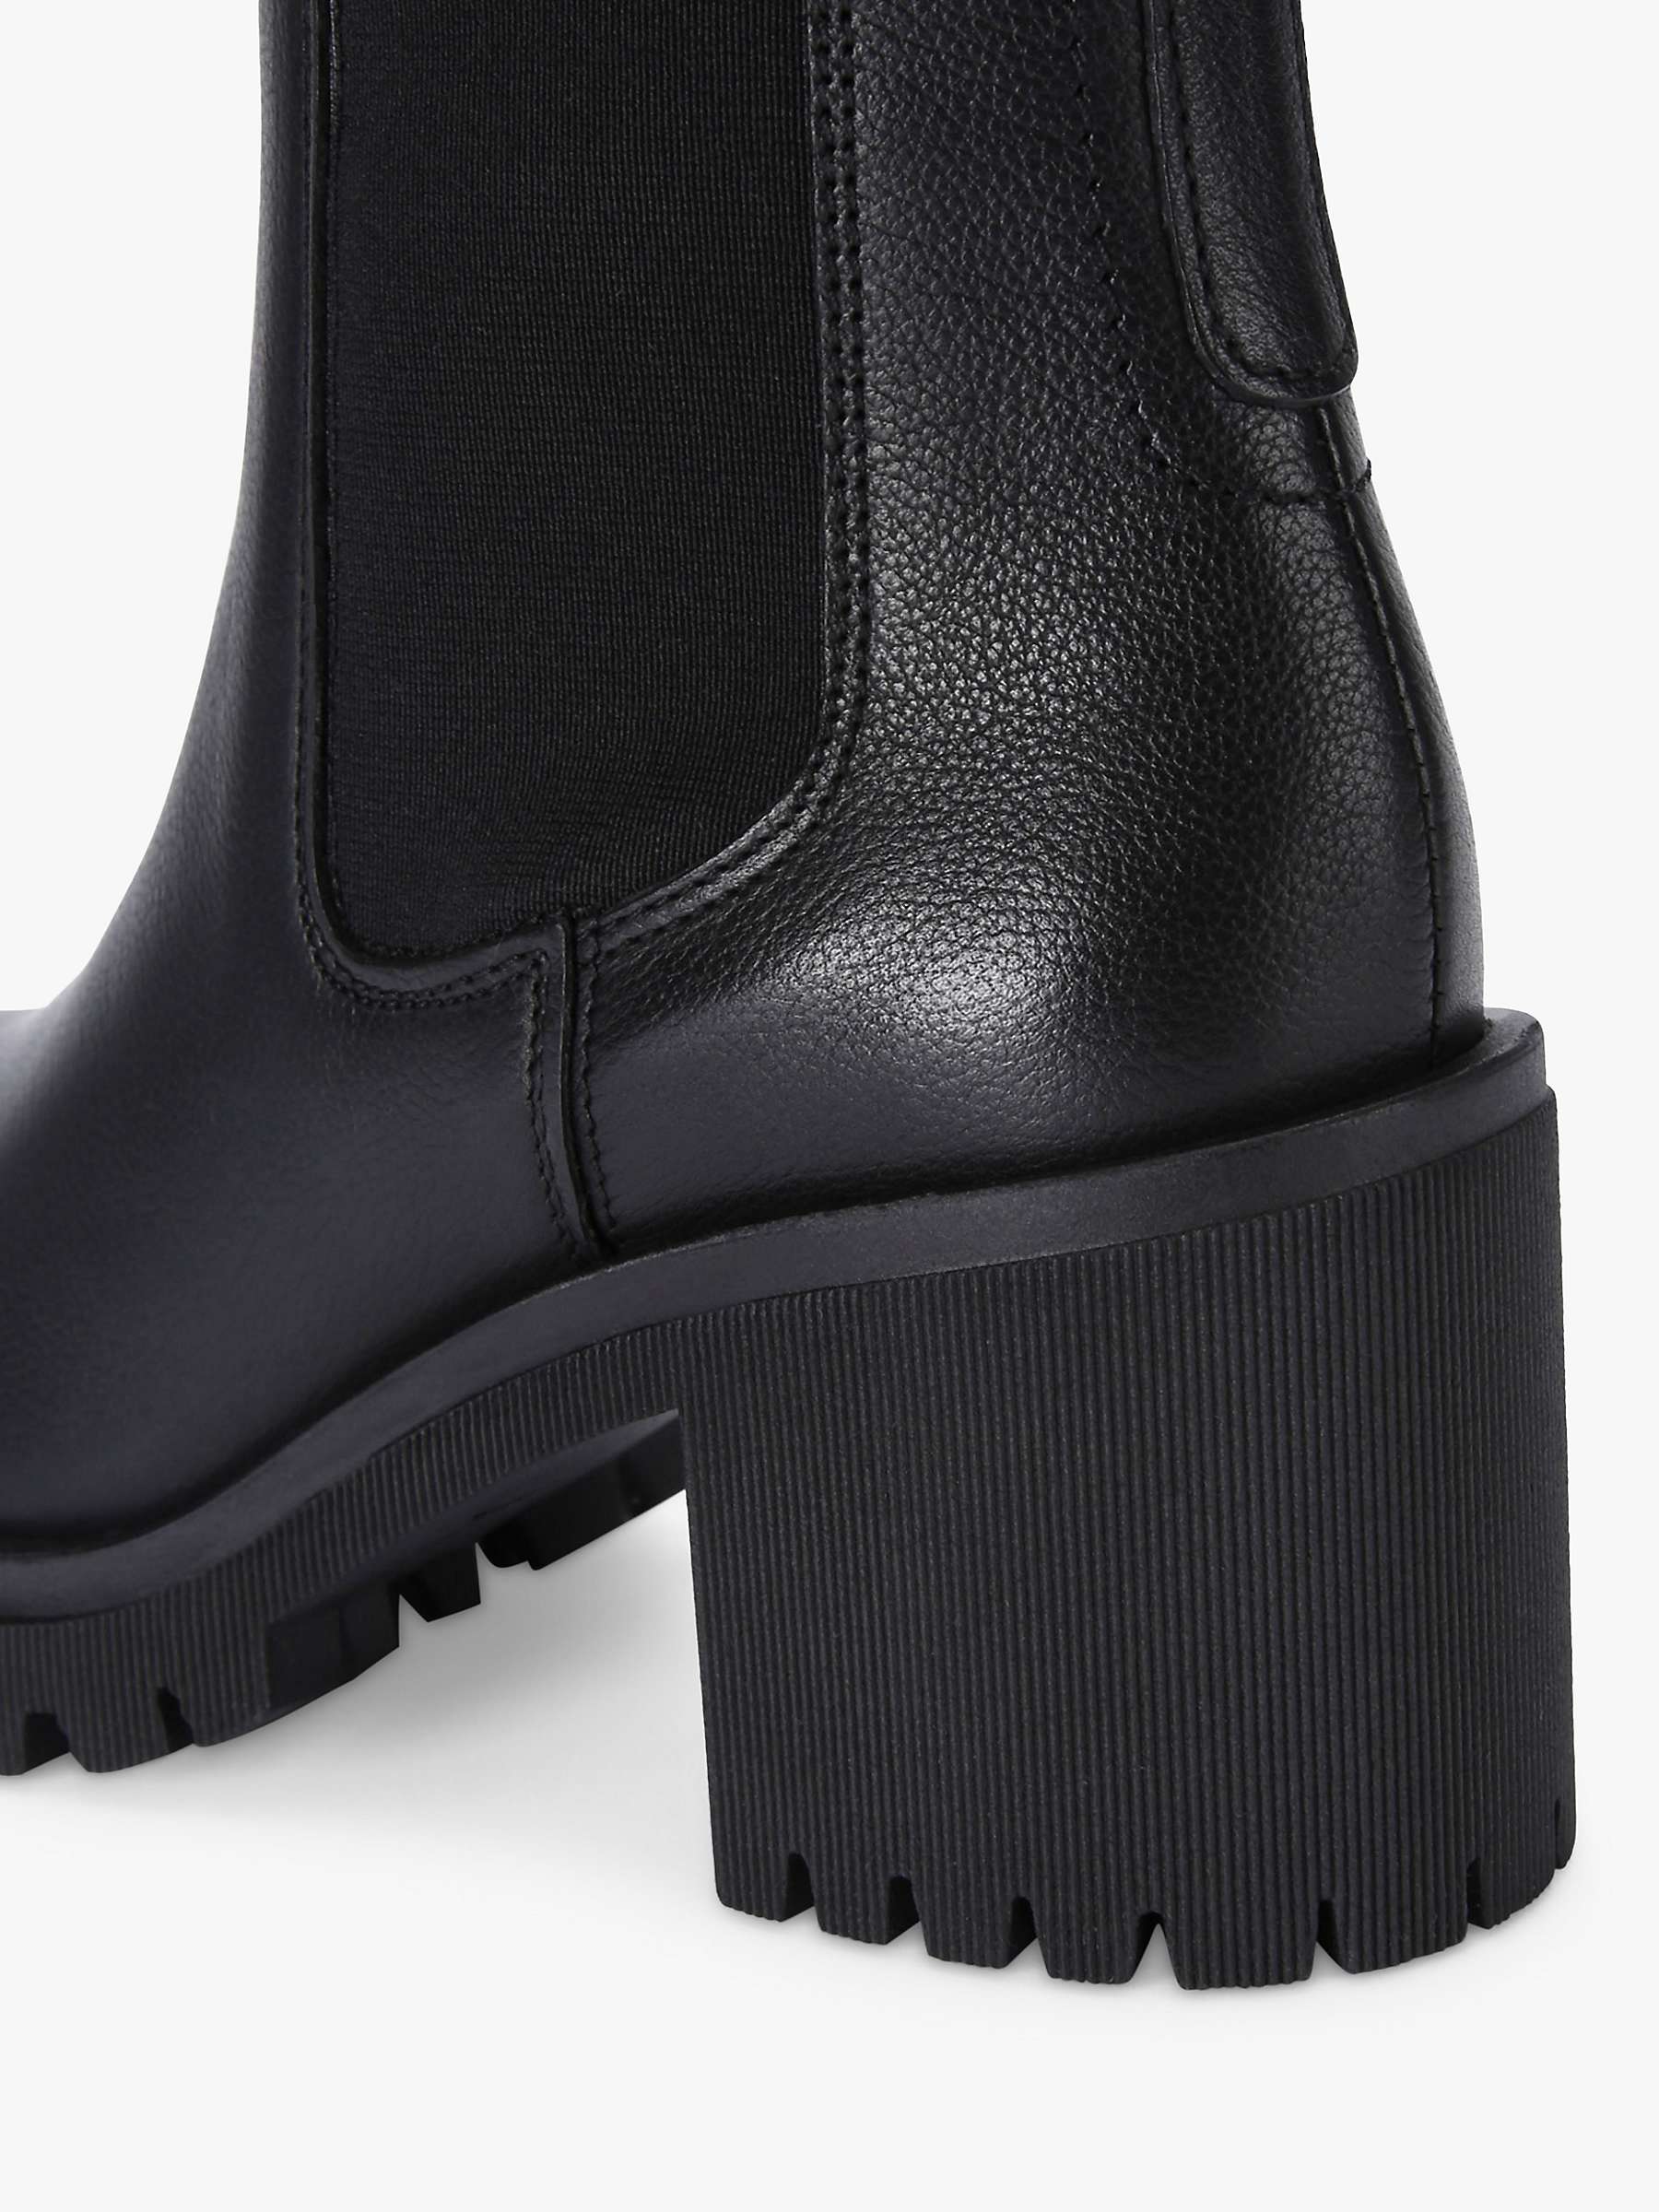 Buy Carvela Mega Leather Ankle Boots Online at johnlewis.com